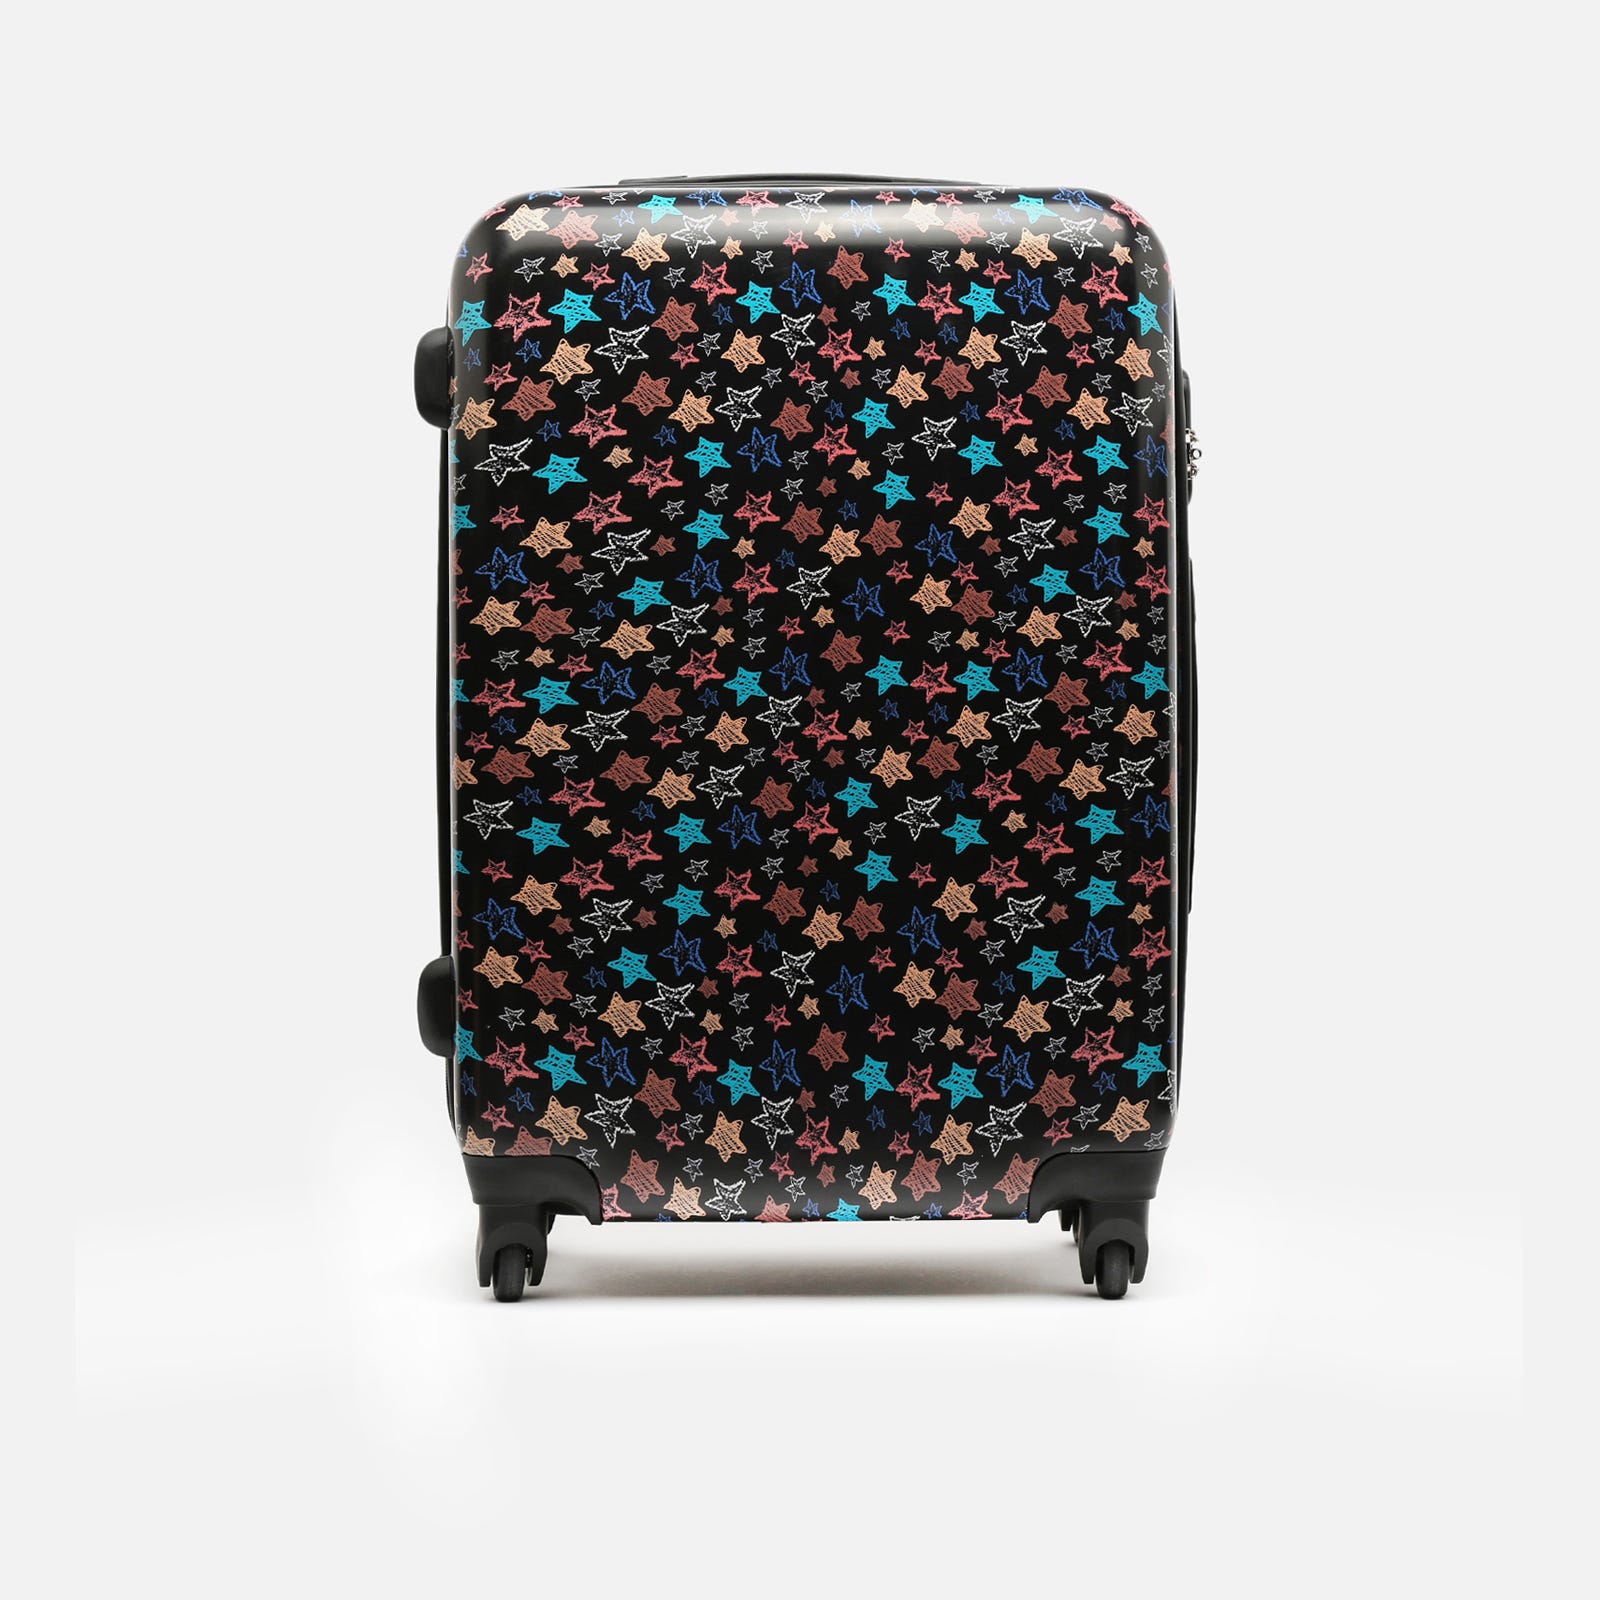 Medium rigid suitcase with star print